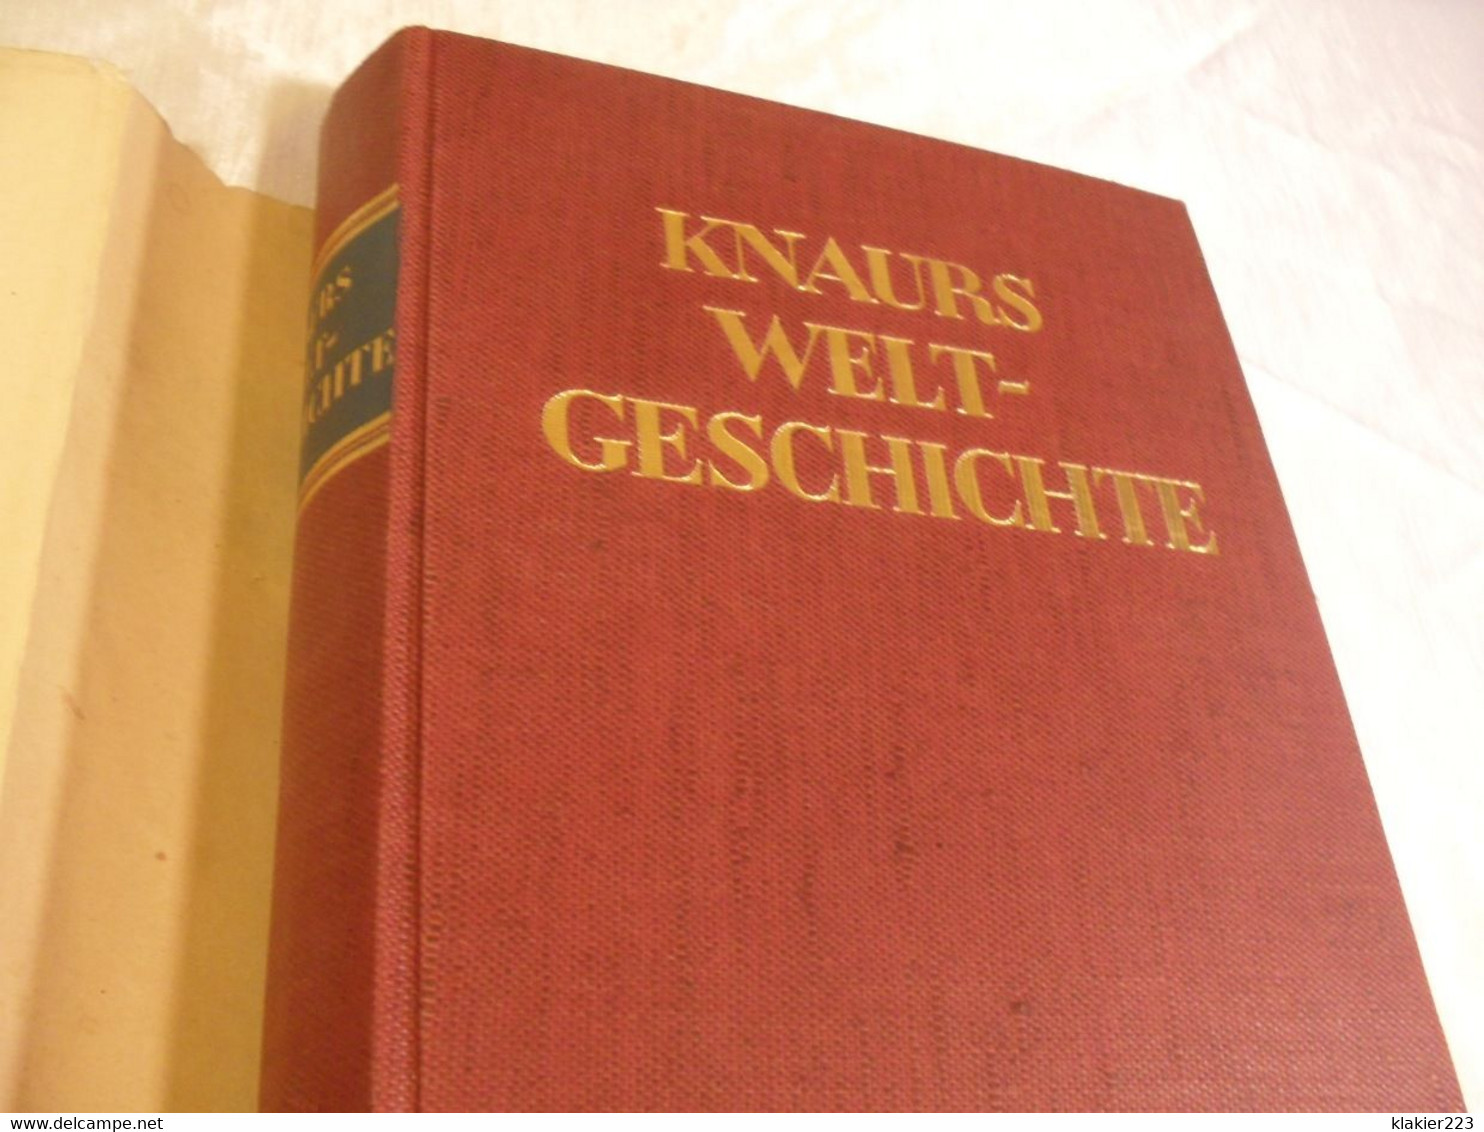 Knaurs Weltgeschichte. Von der Urzeit bis zur Gegenwart // jahr 1935